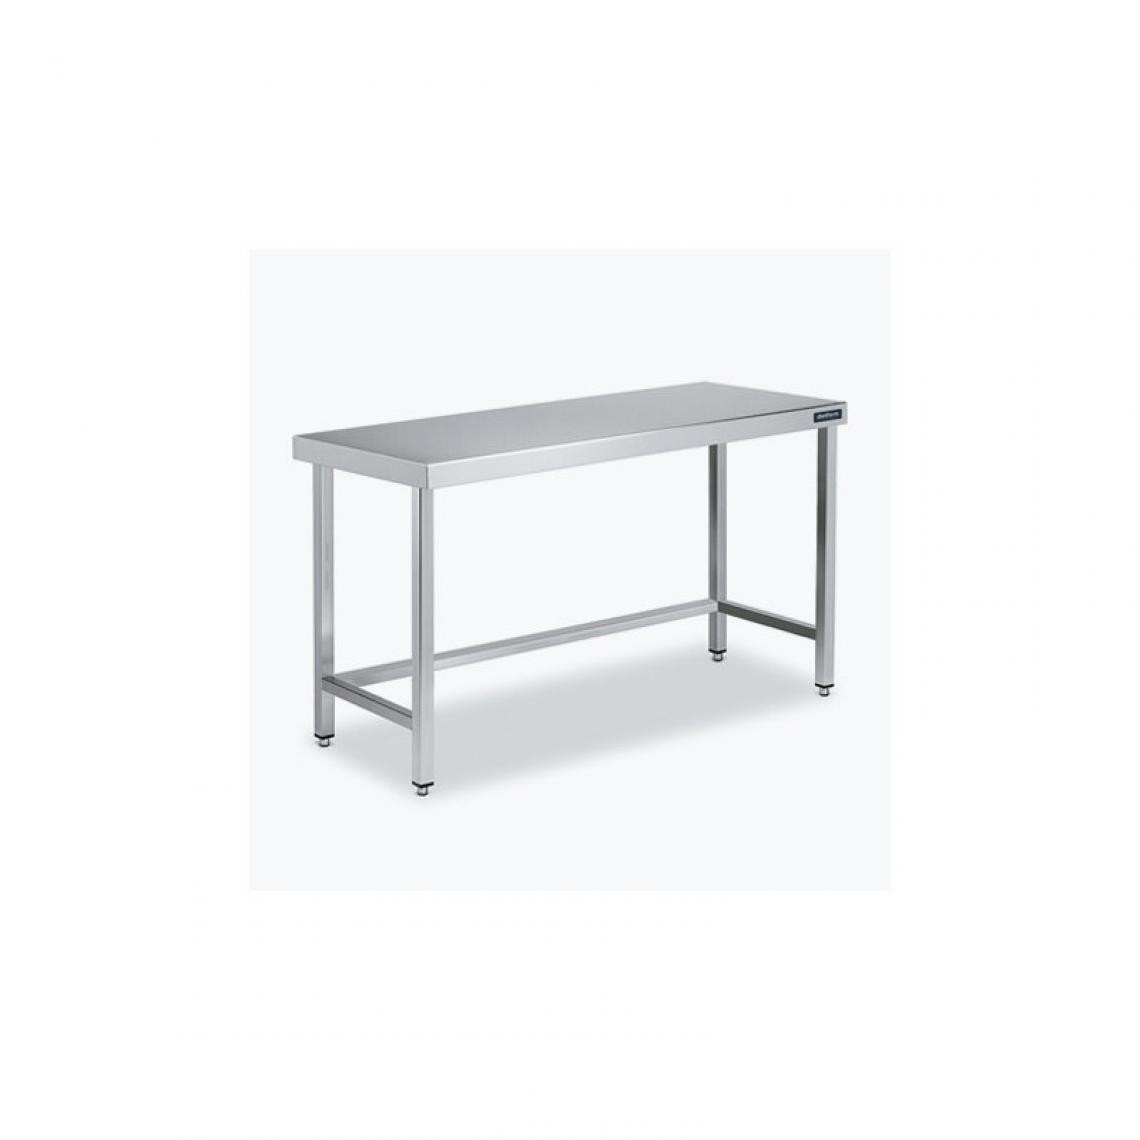 DISTFORM - Table Centrale 600x600 avec Renforts - Distform - Inox 18/10700x600x850mm - Tables à manger